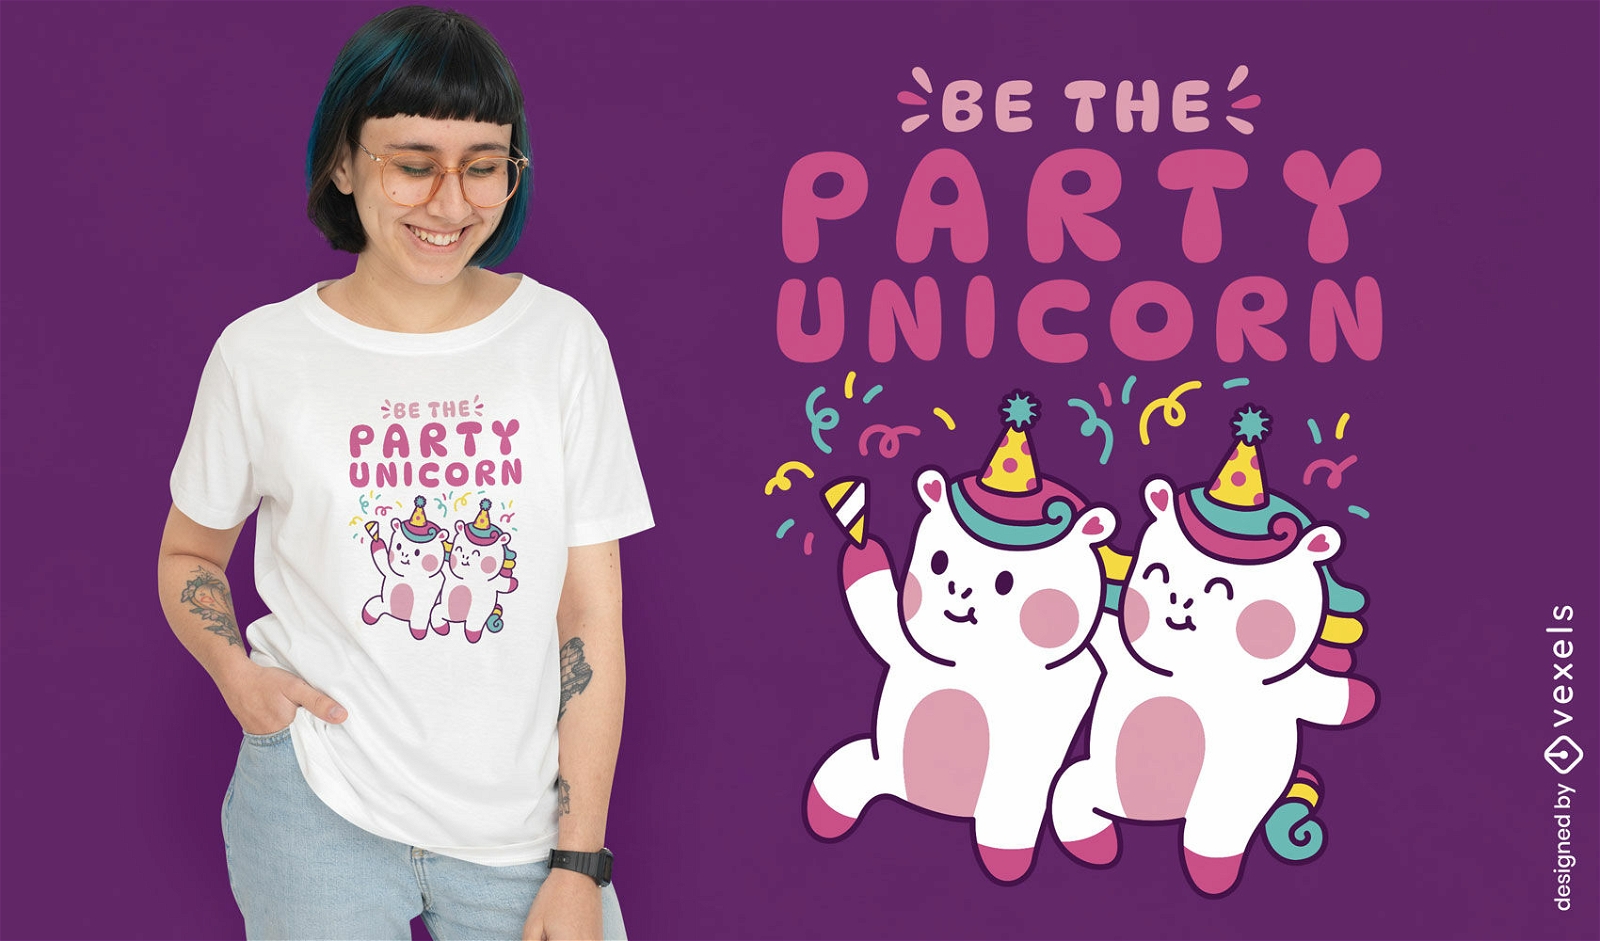 Party unicorn t-shirt design